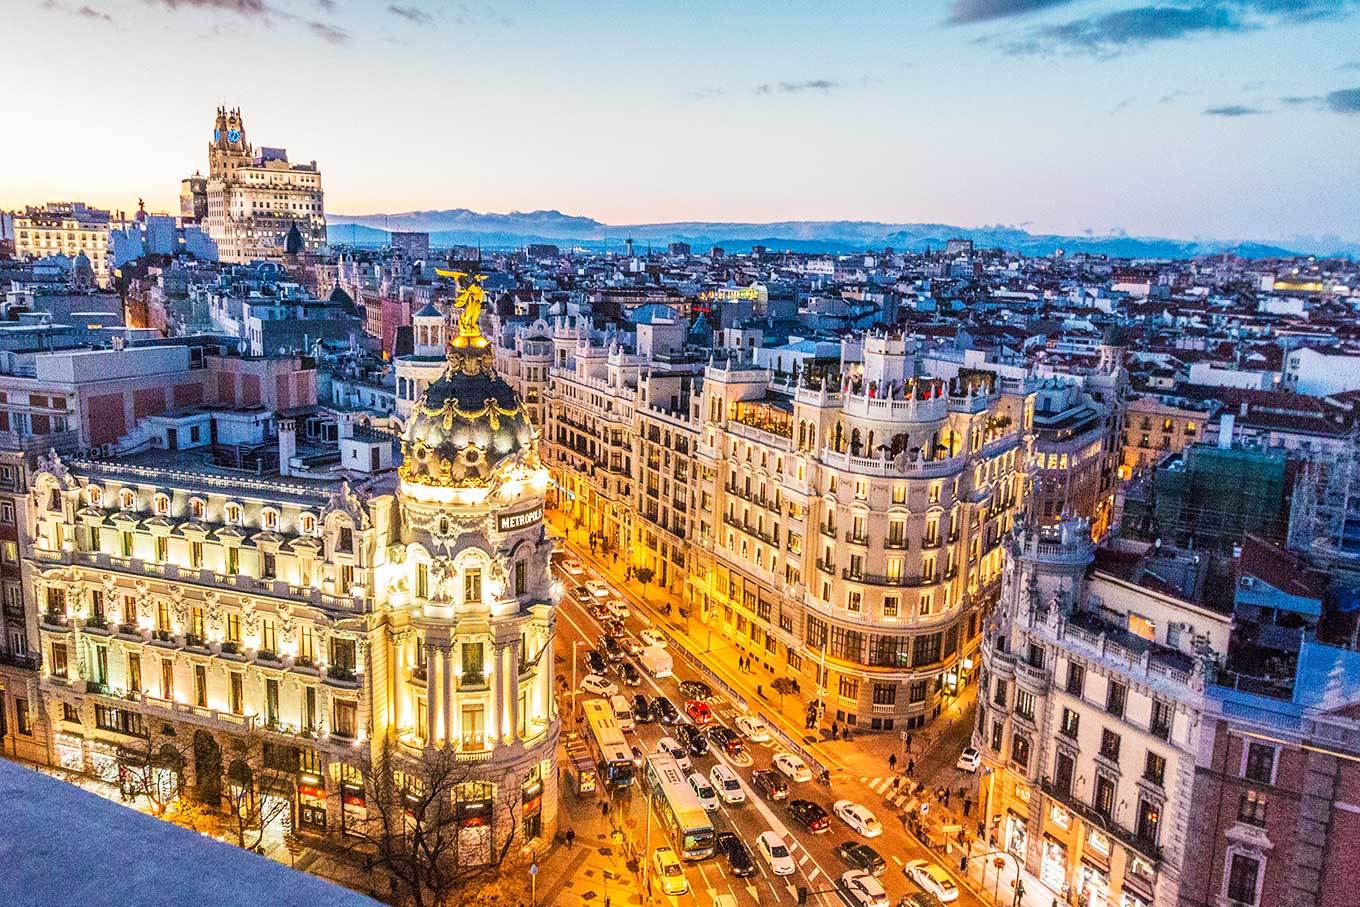 Espanha- Top 10 cidades, política, religião, geografia, e + curiosidades